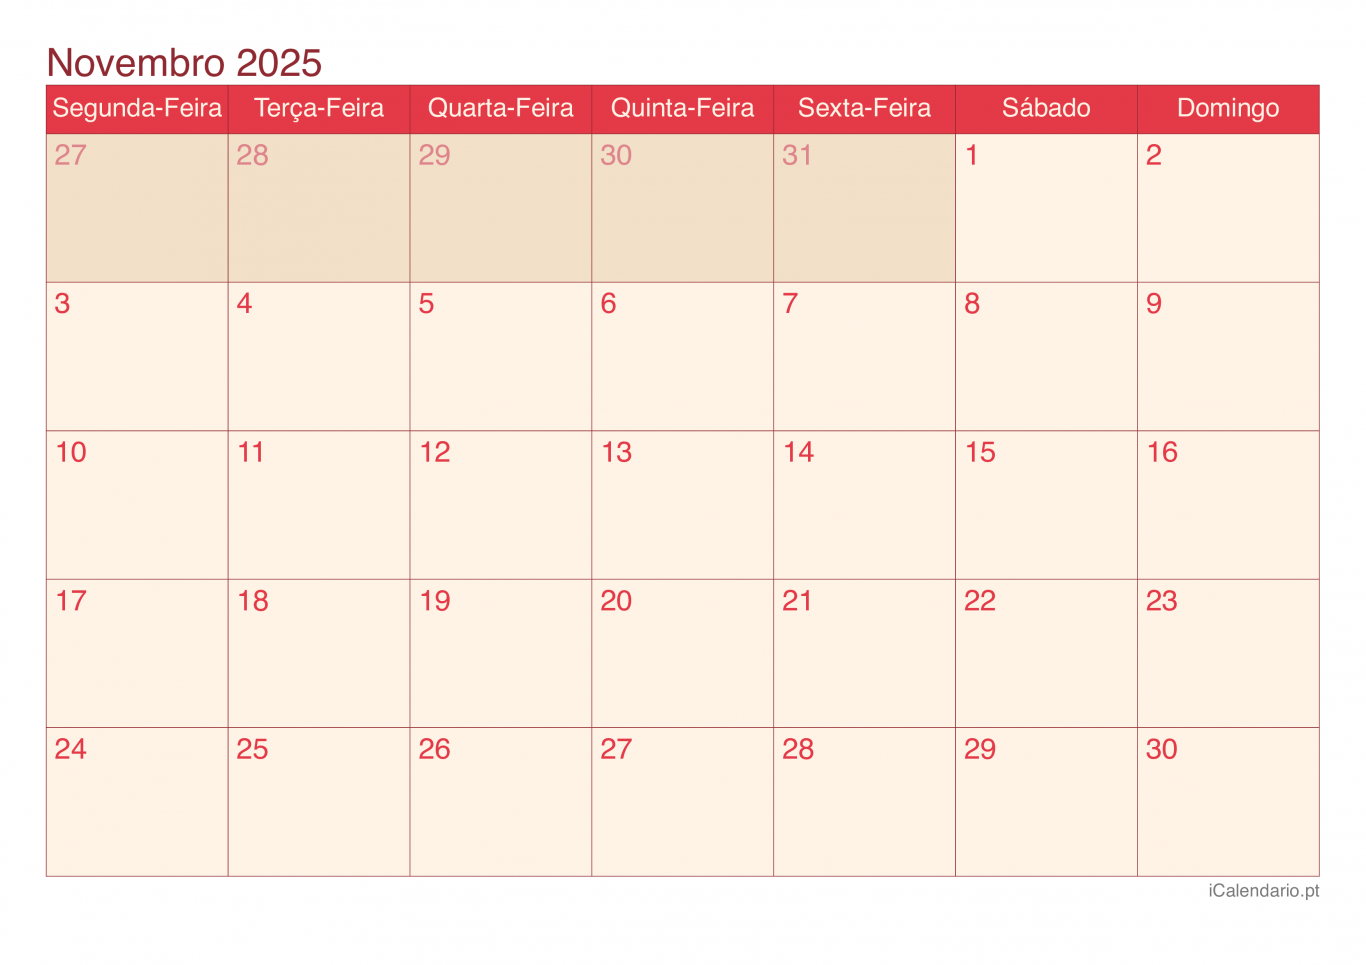 Calendário de novembro 2025 - Cherry